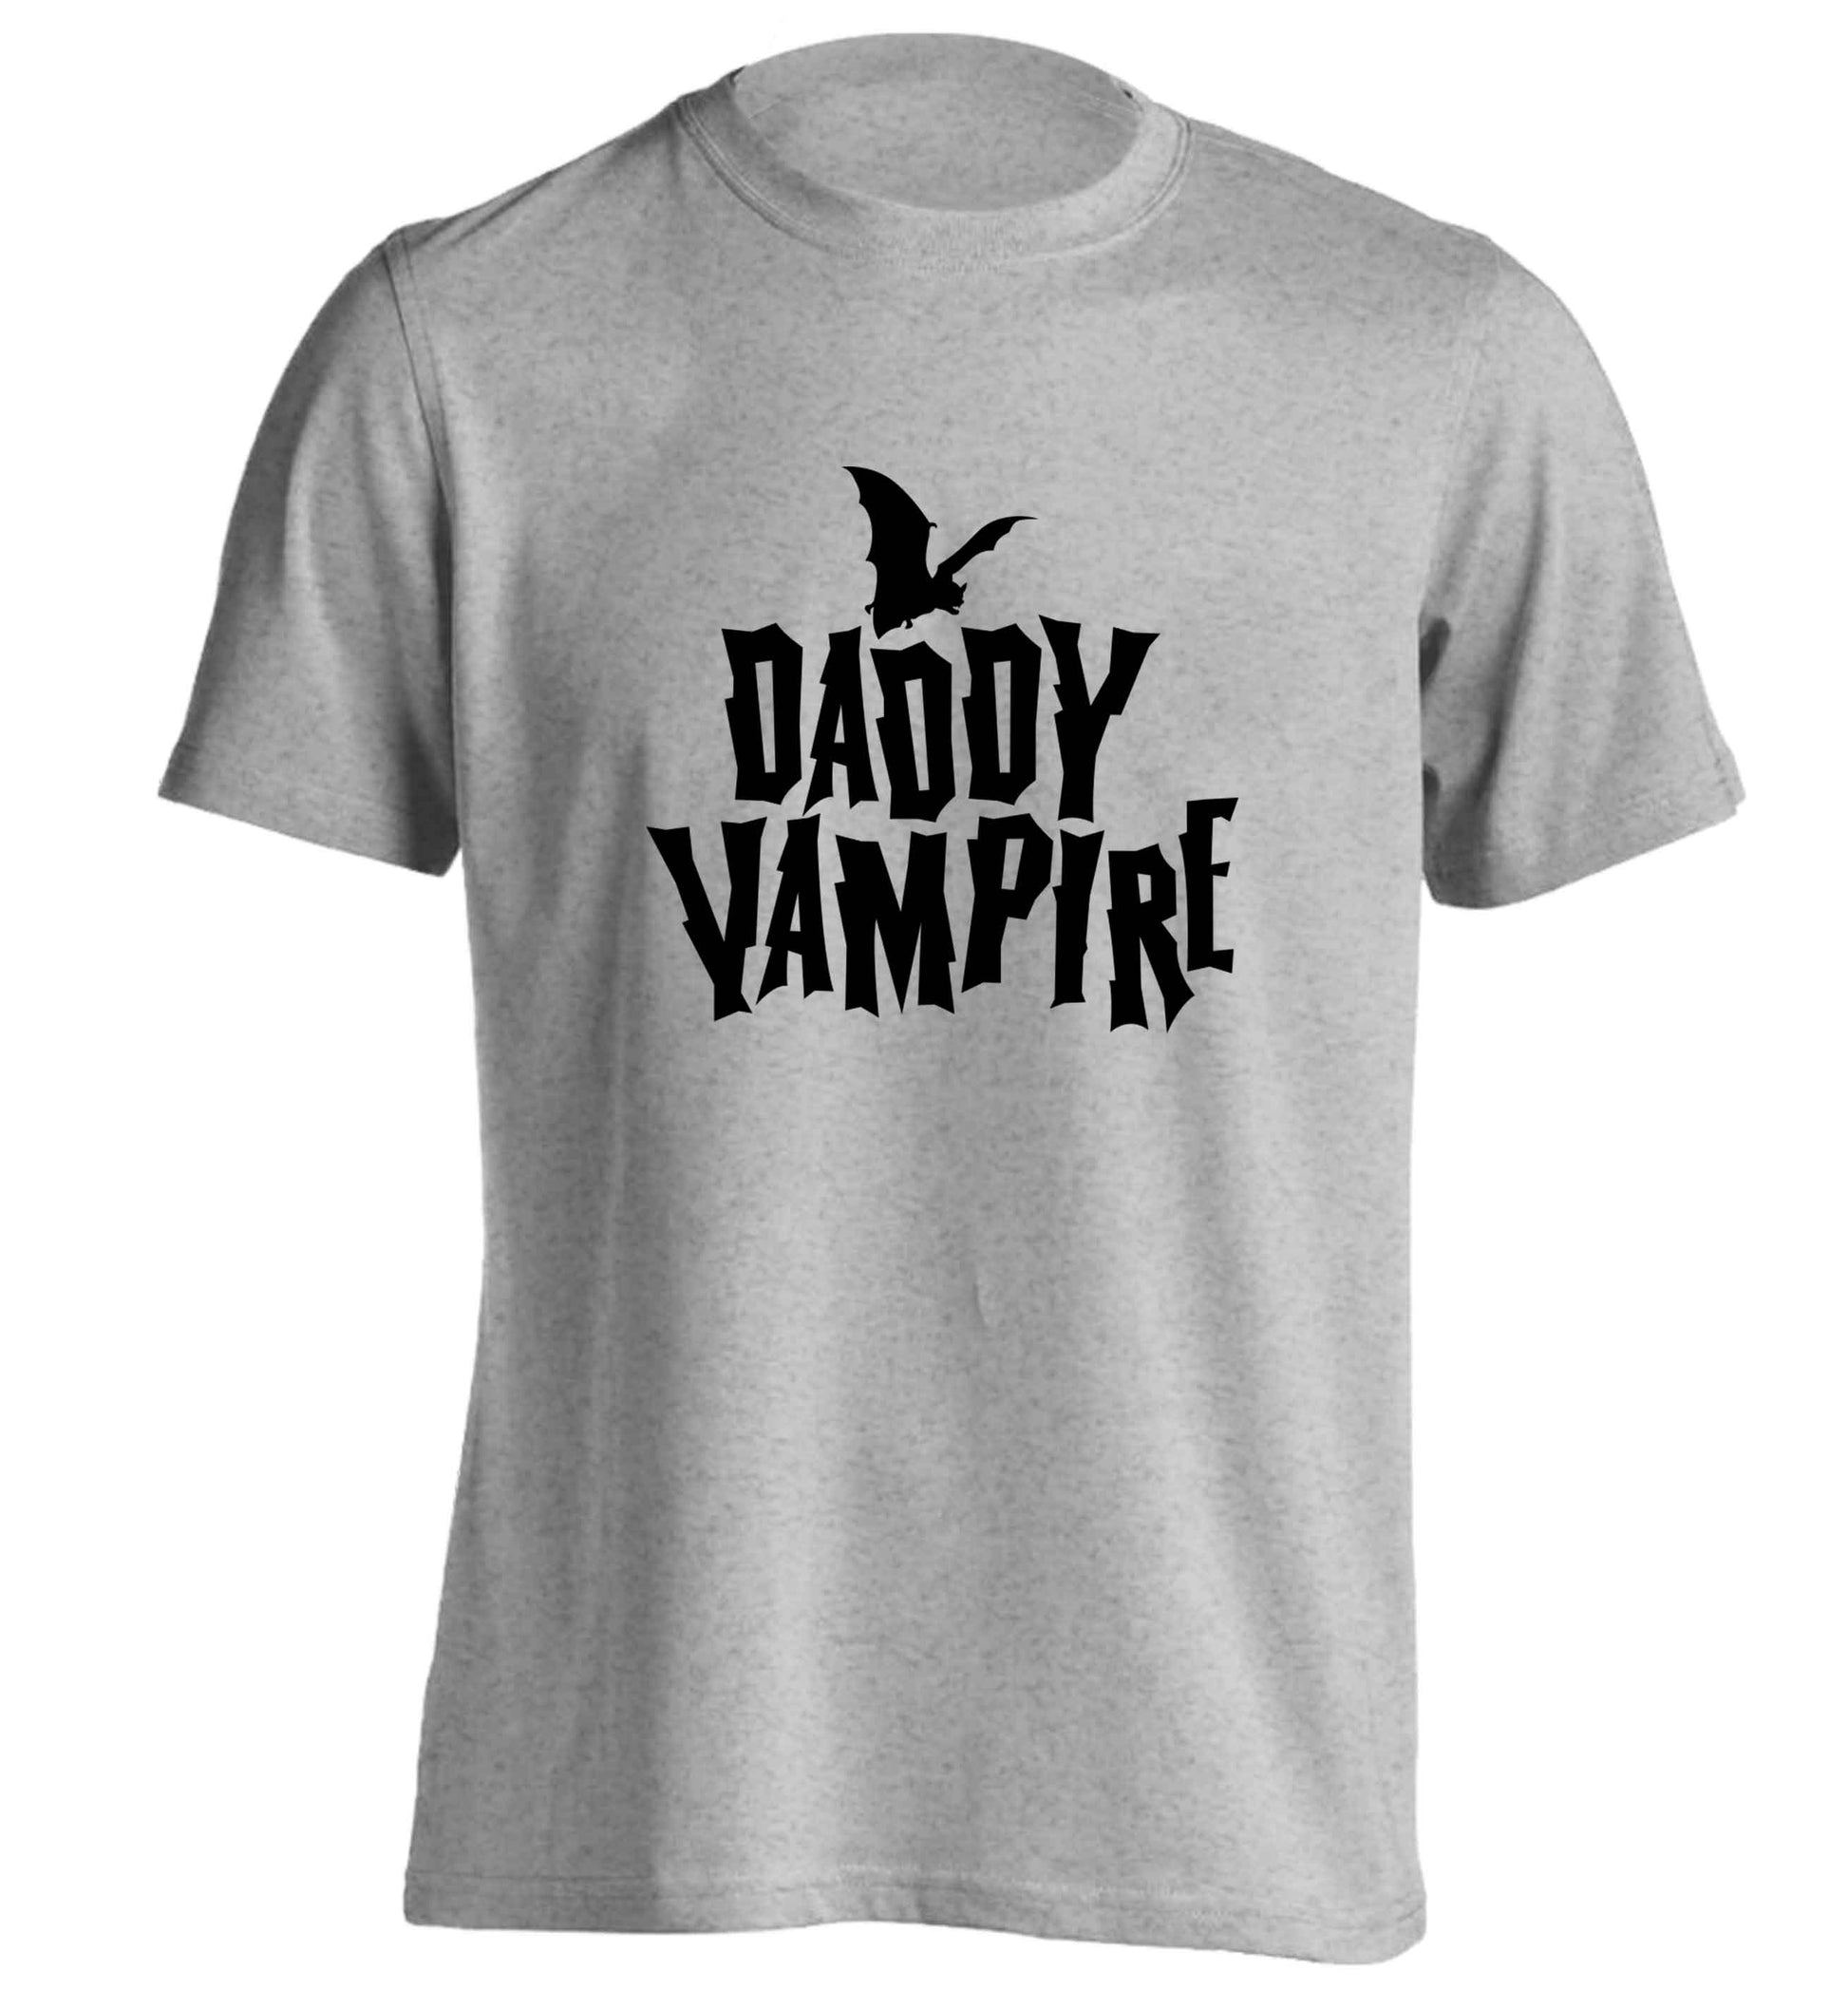 Daddy vampire adults unisex grey Tshirt 2XL